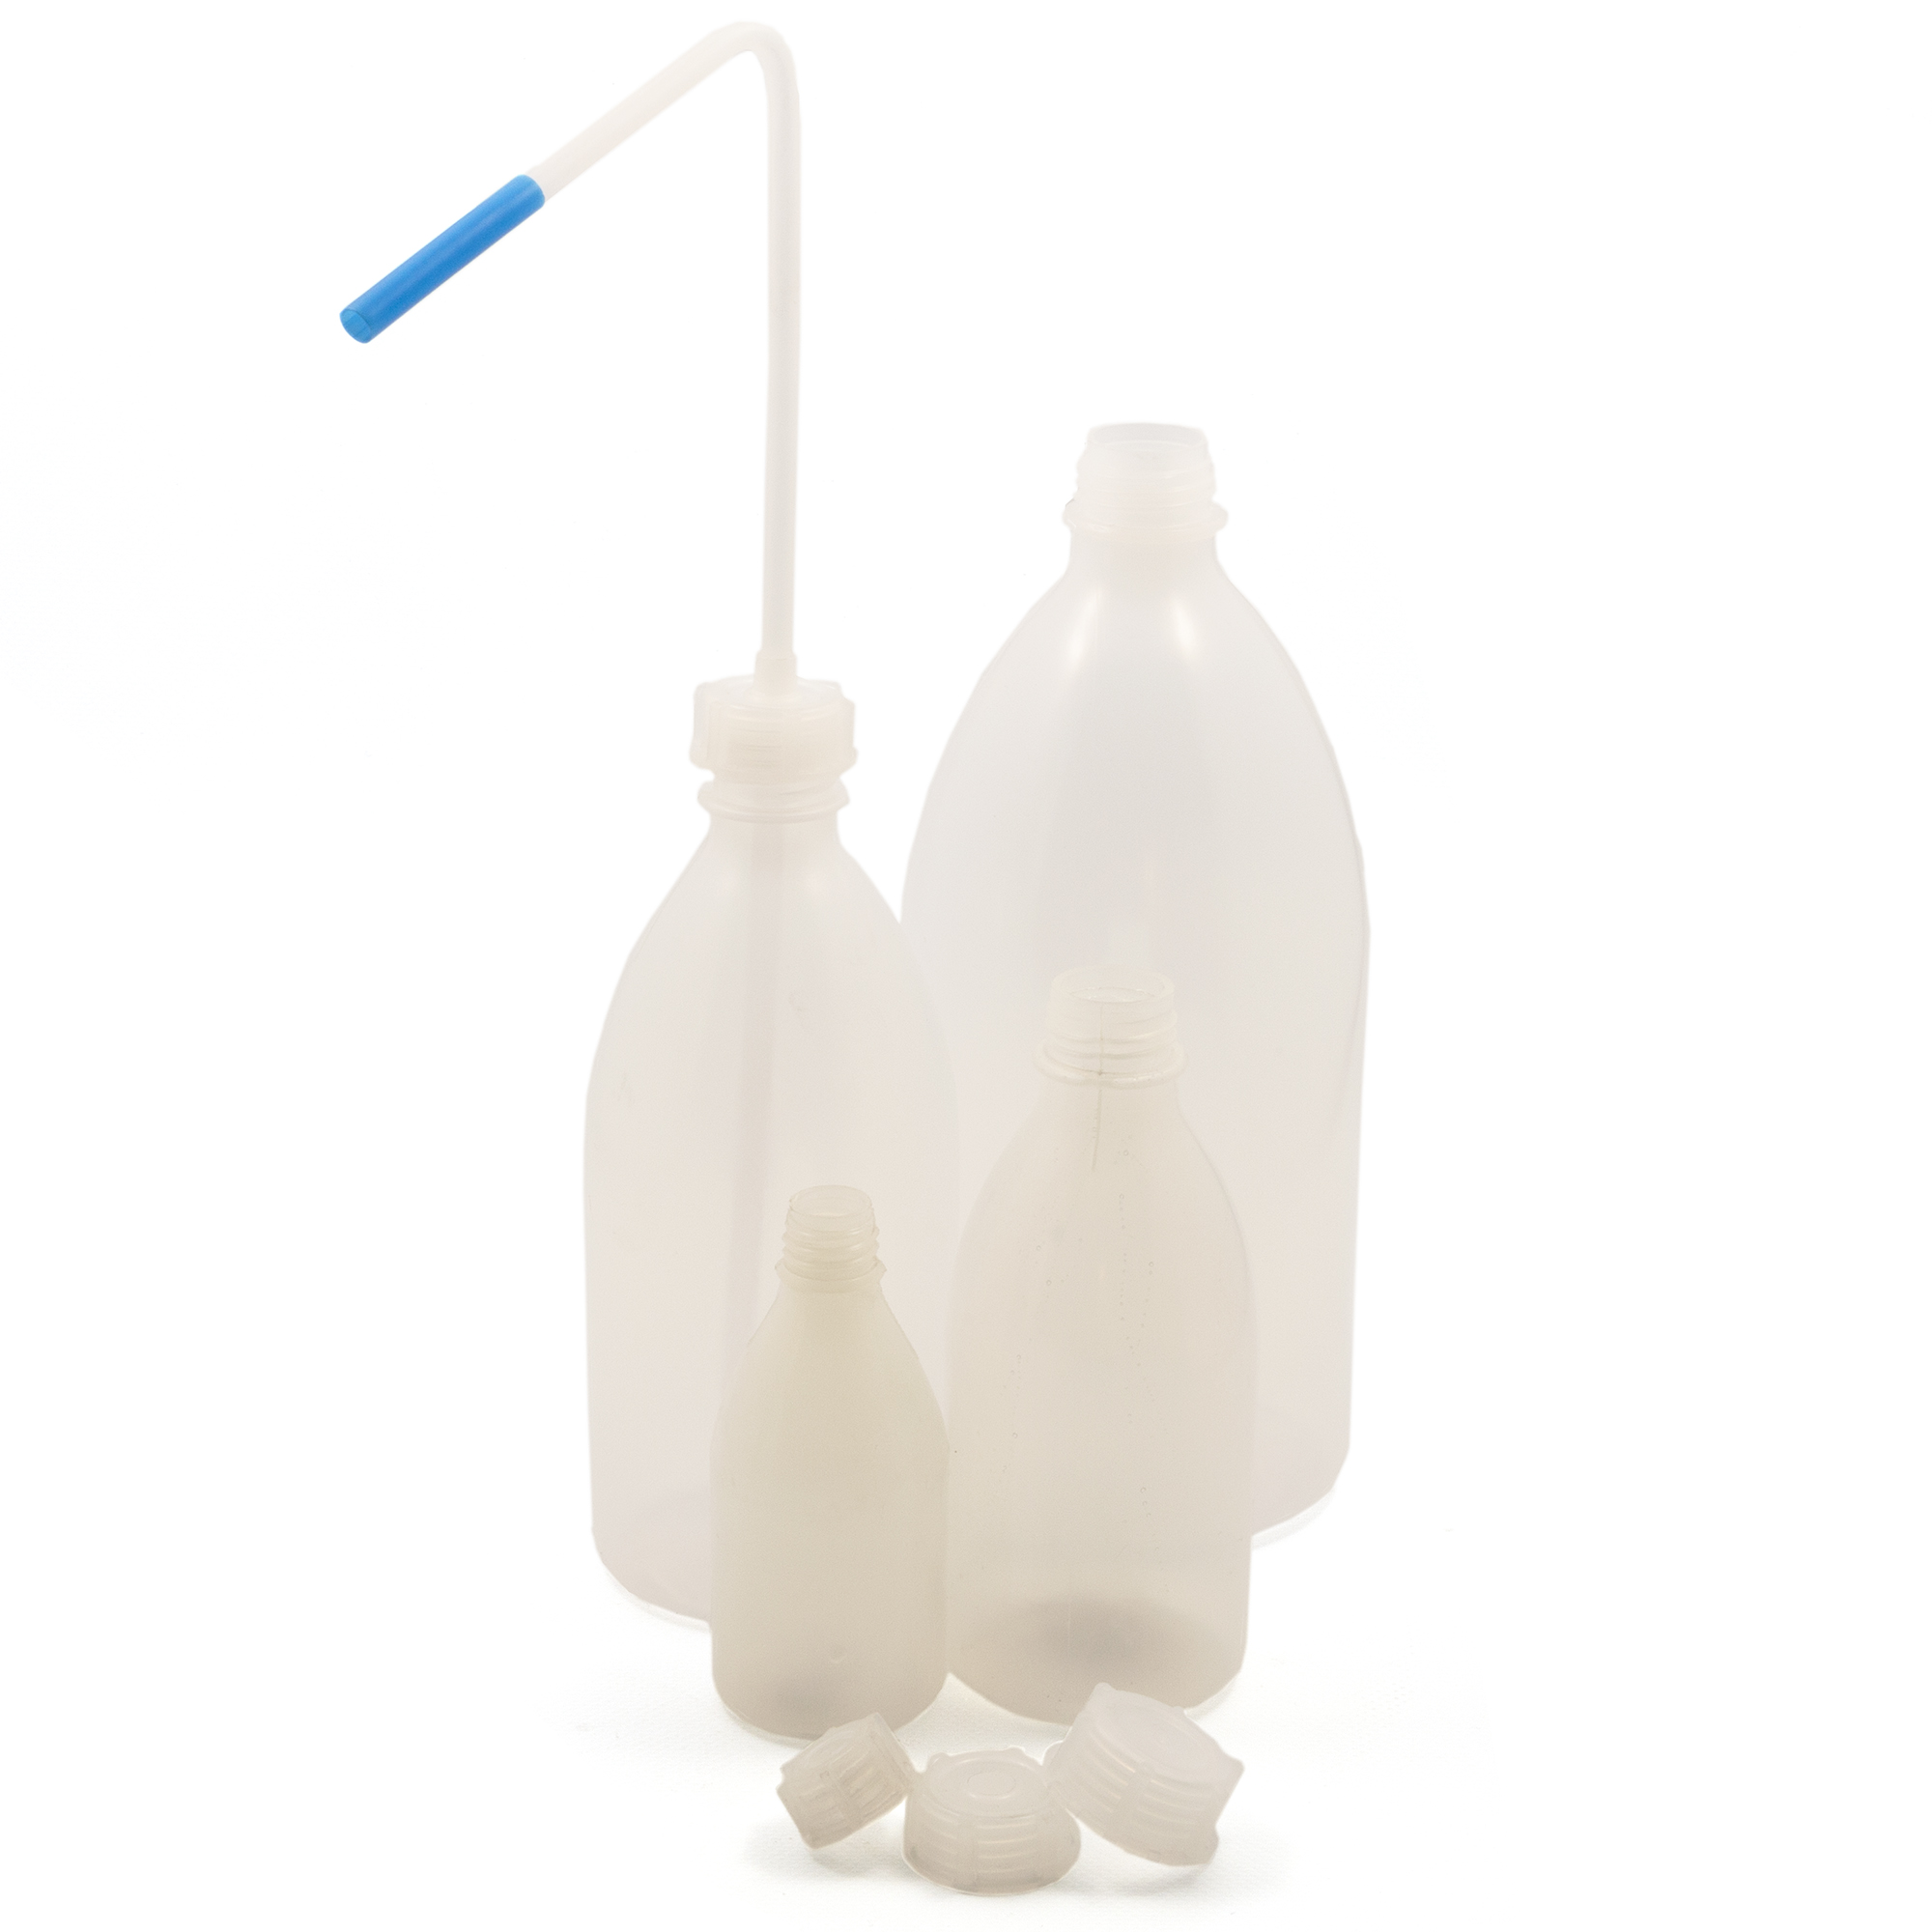 ABML 15624147 Narrow neck bottle plastic - 10ml